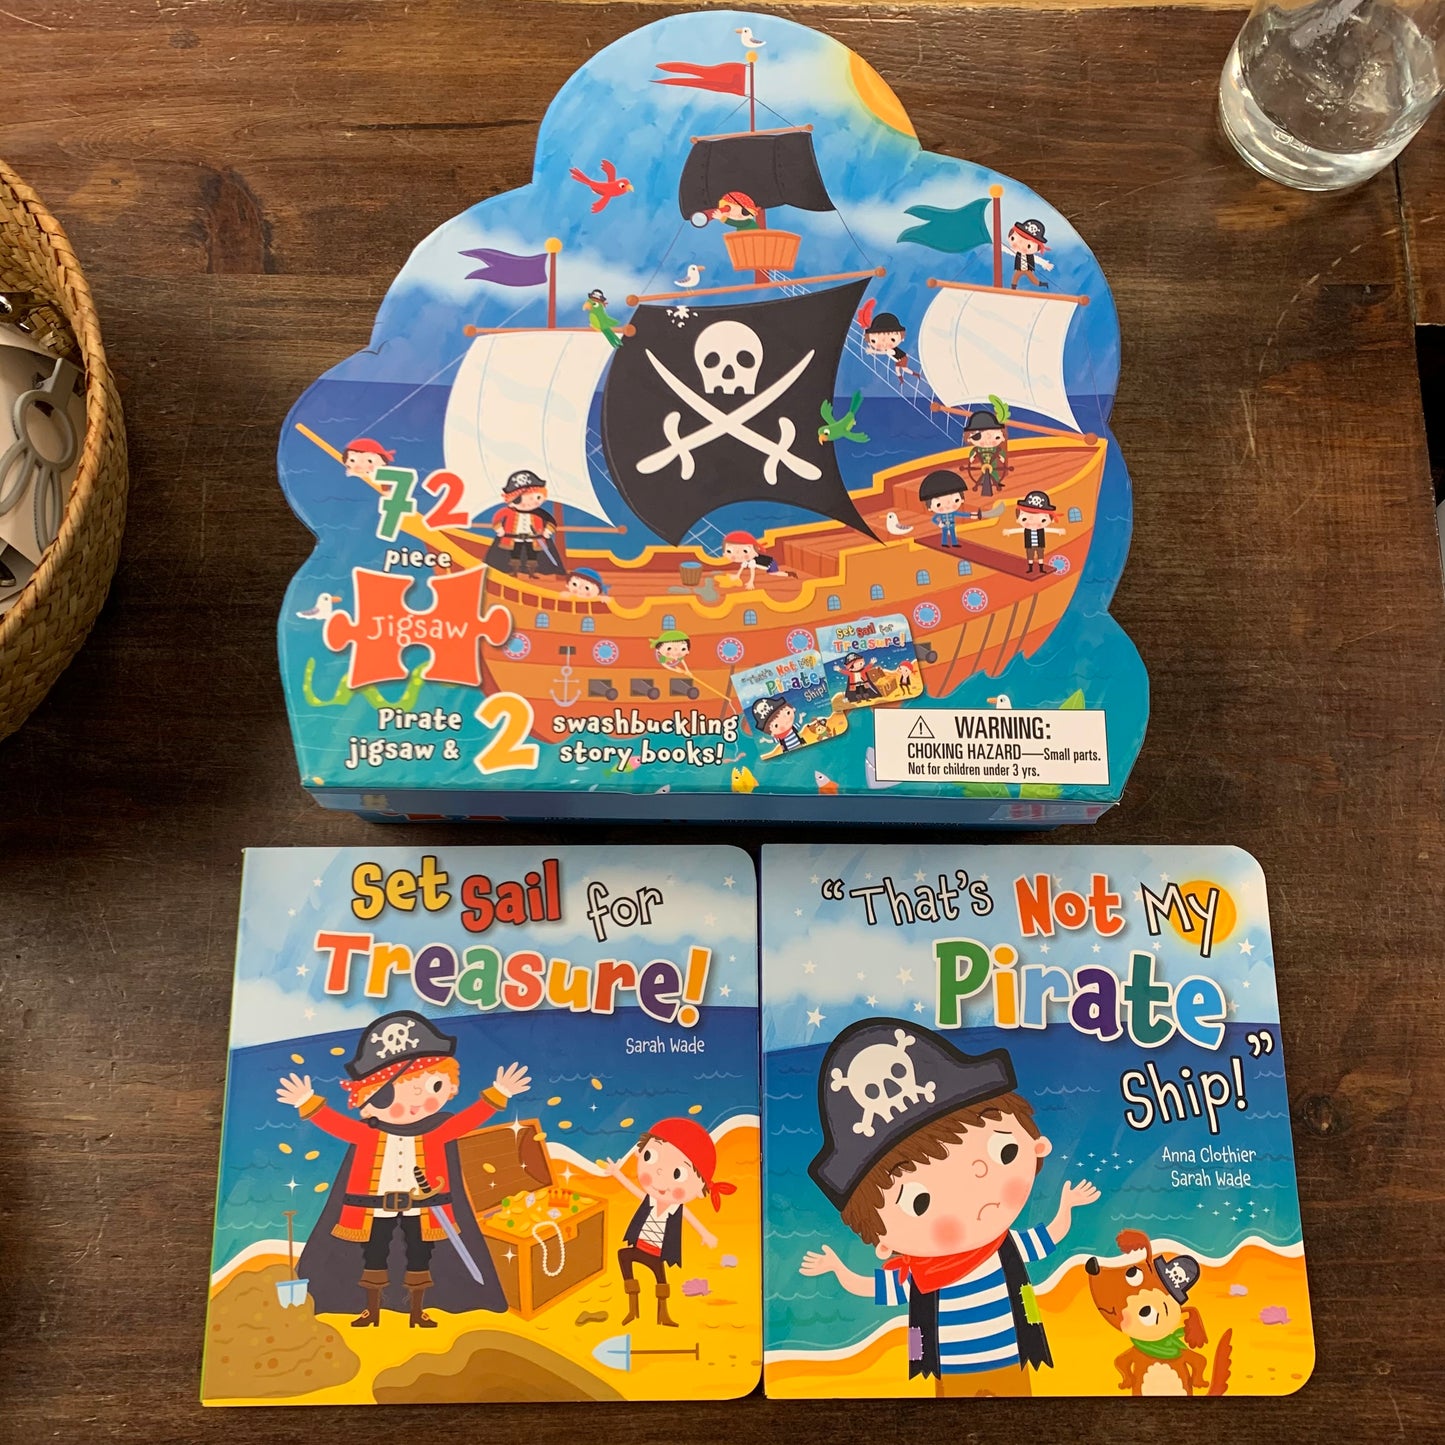 Pirate Jigsaw & 2 Story books